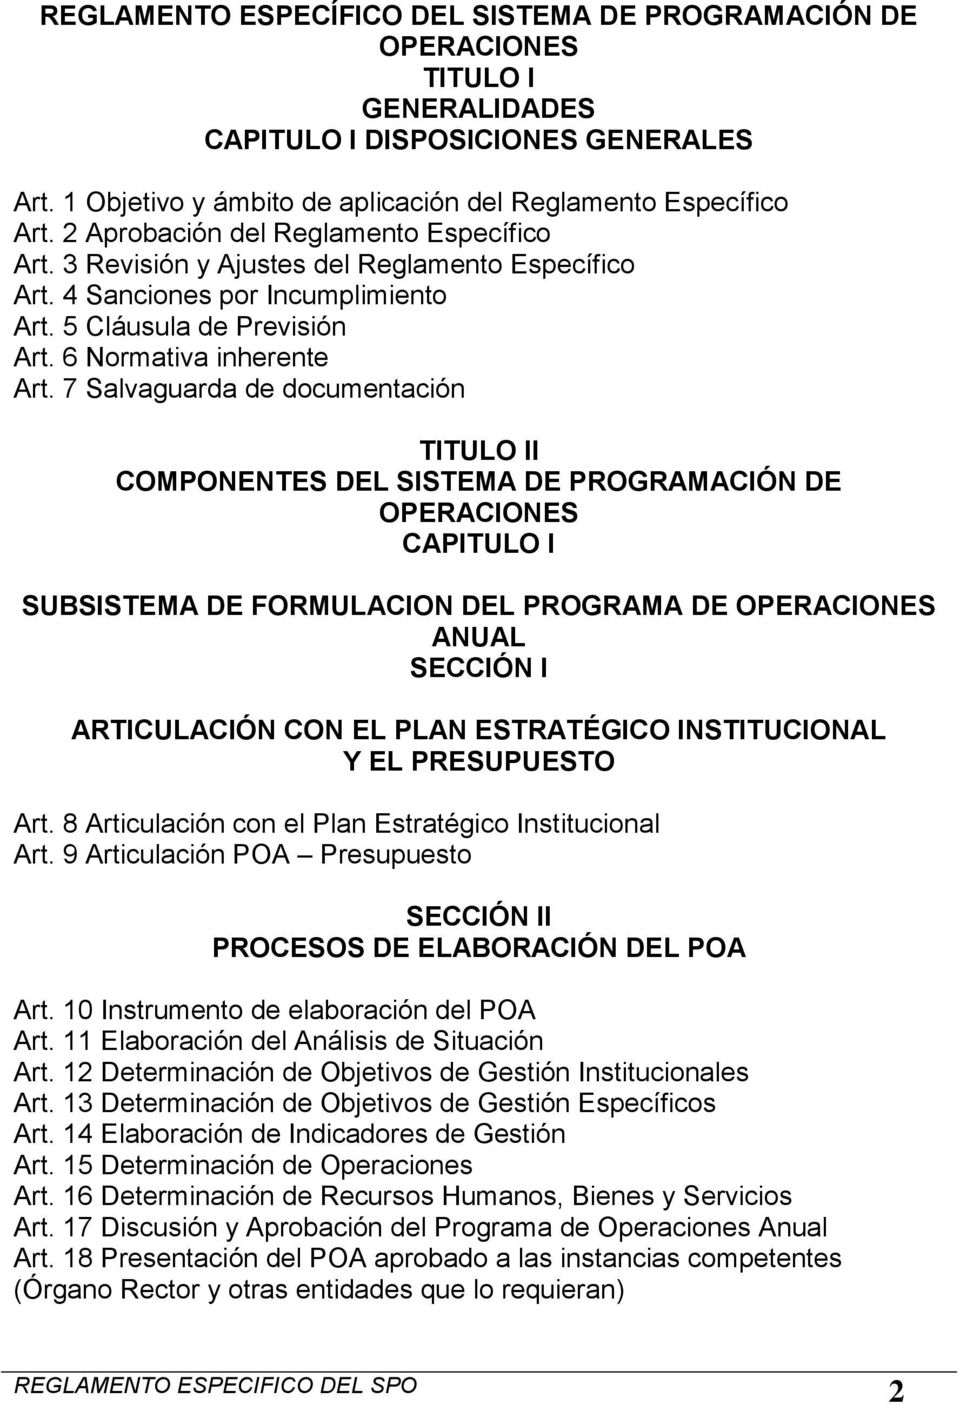 7 Salvaguarda de documentación TITULO II COMPONENTES DEL SISTEMA DE PROGRAMACIÓN DE OPERACIONES CAPITULO I SUBSISTEMA DE FORMULACION DEL PROGRAMA DE OPERACIONES ANUAL SECCIÓN I ARTICULACIÓN CON EL